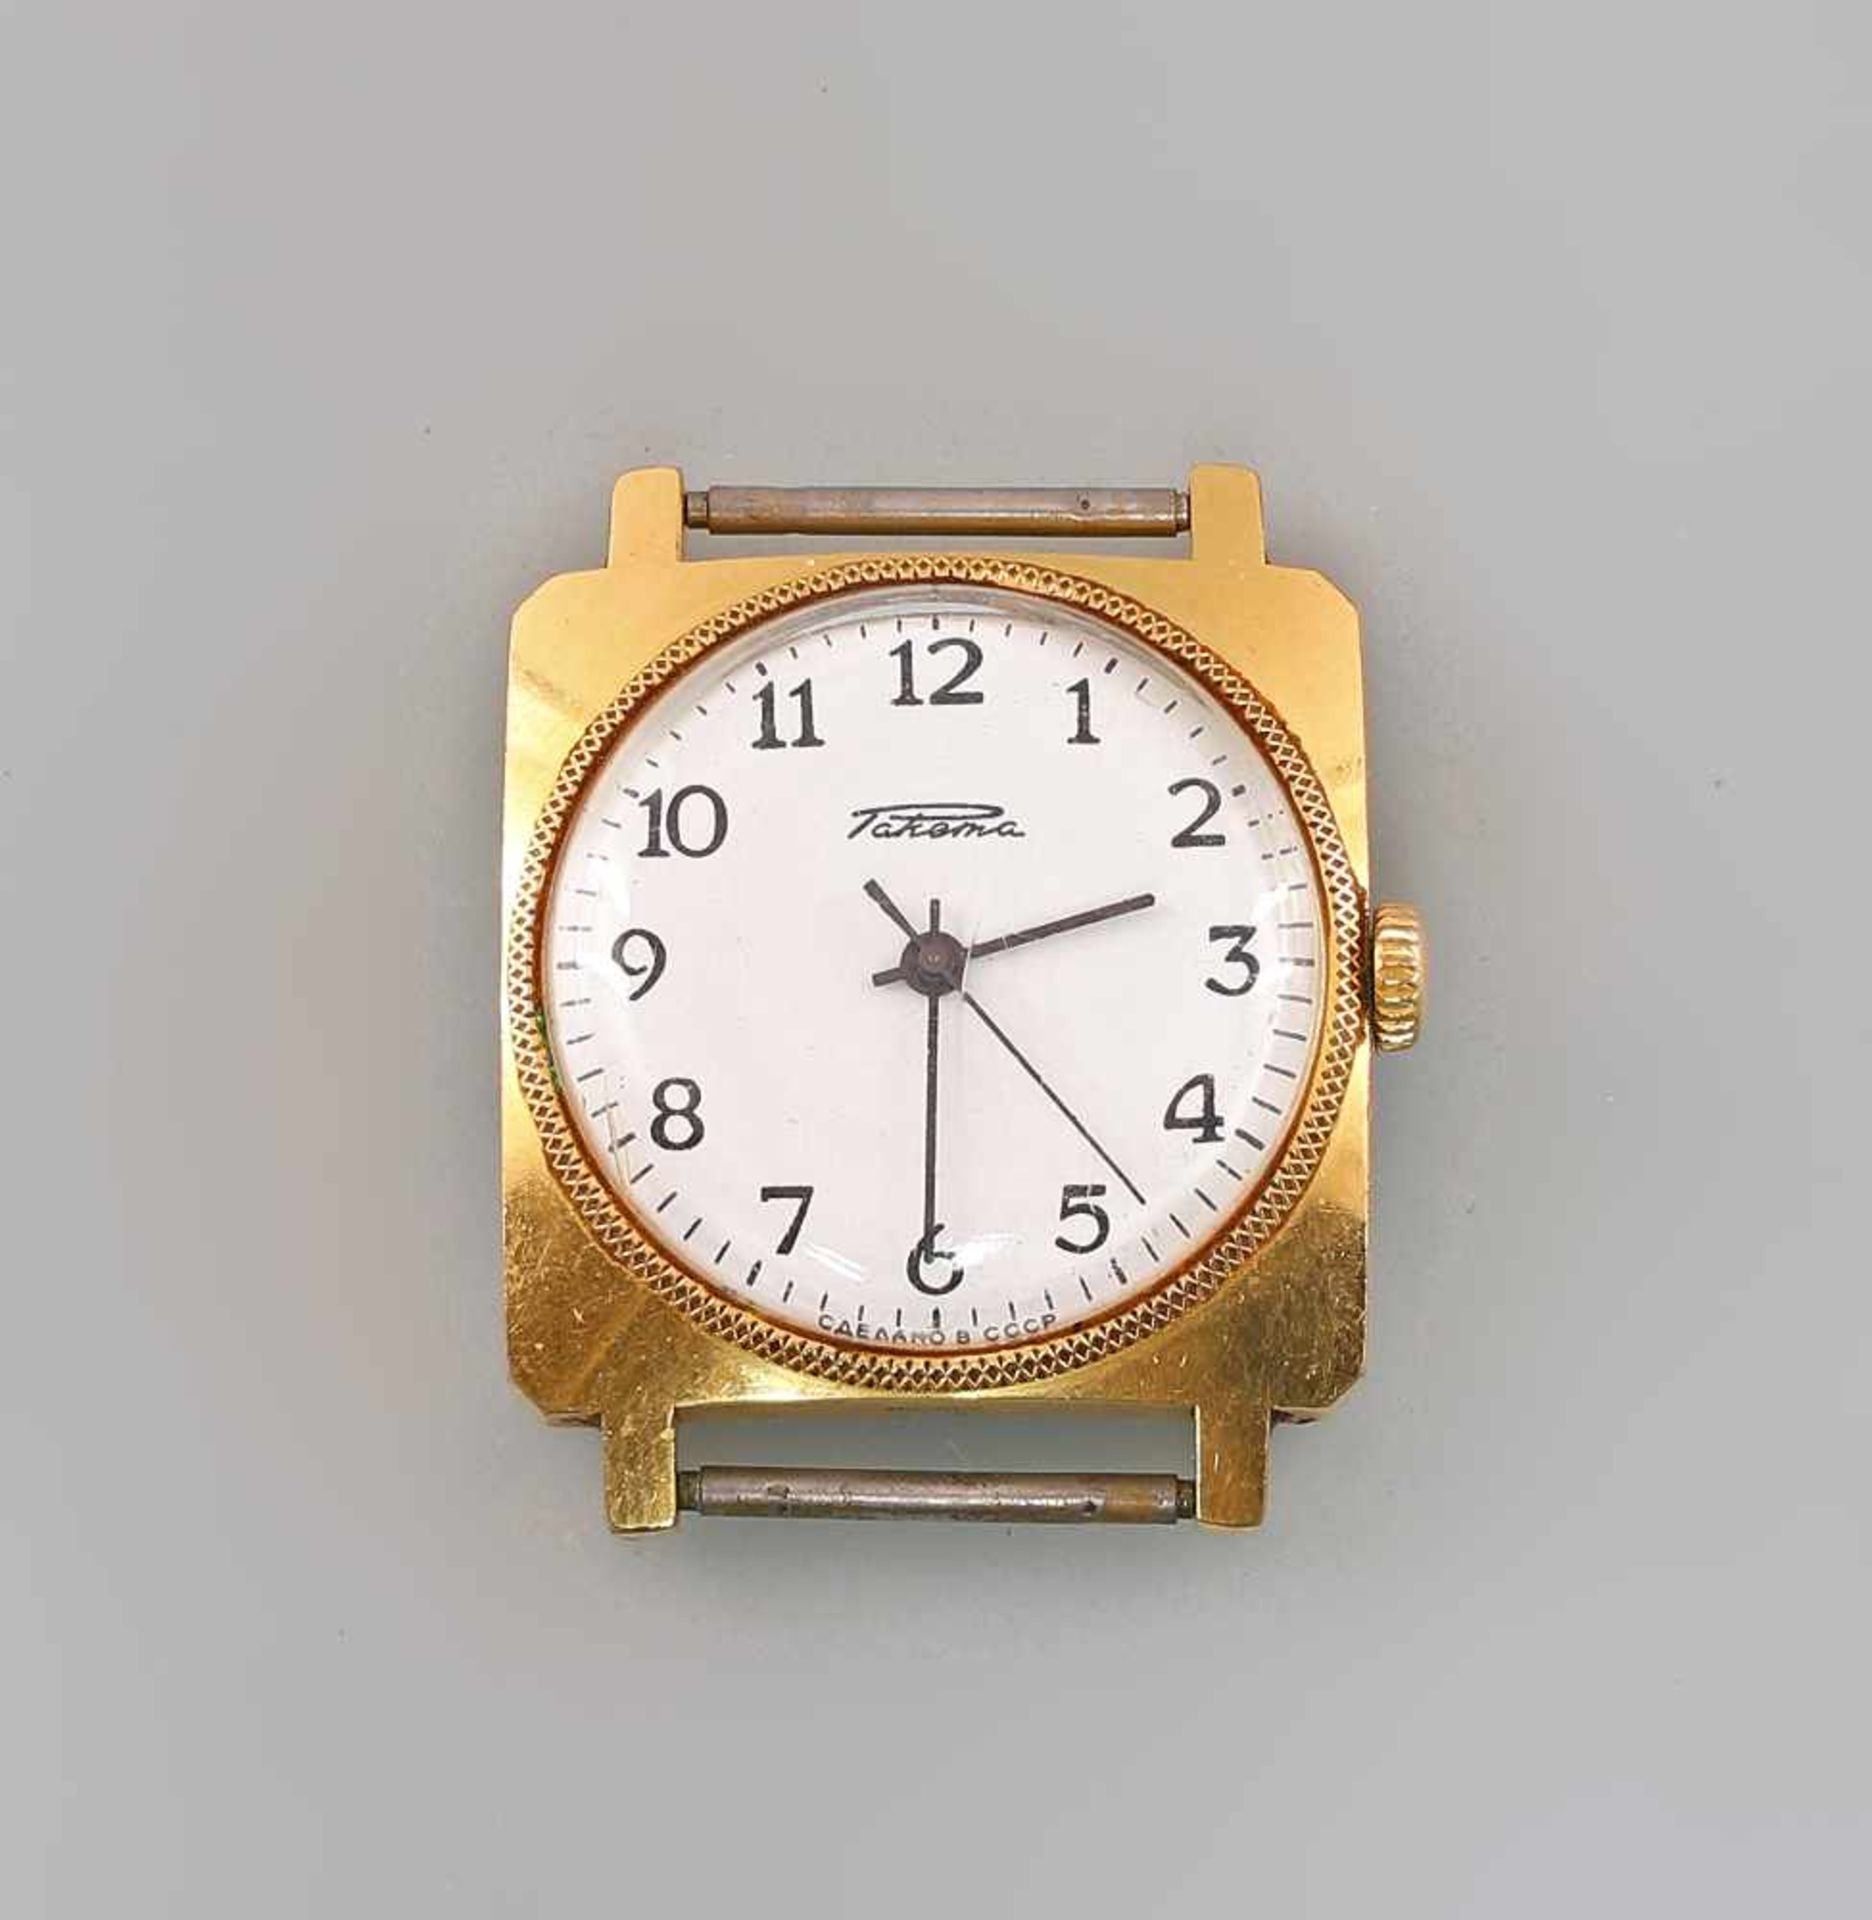 Armbanduhr Raketa um 197070er Jahre, UdSSR, mech. Werk mit Handaufzug, helles Zifferblatt mit